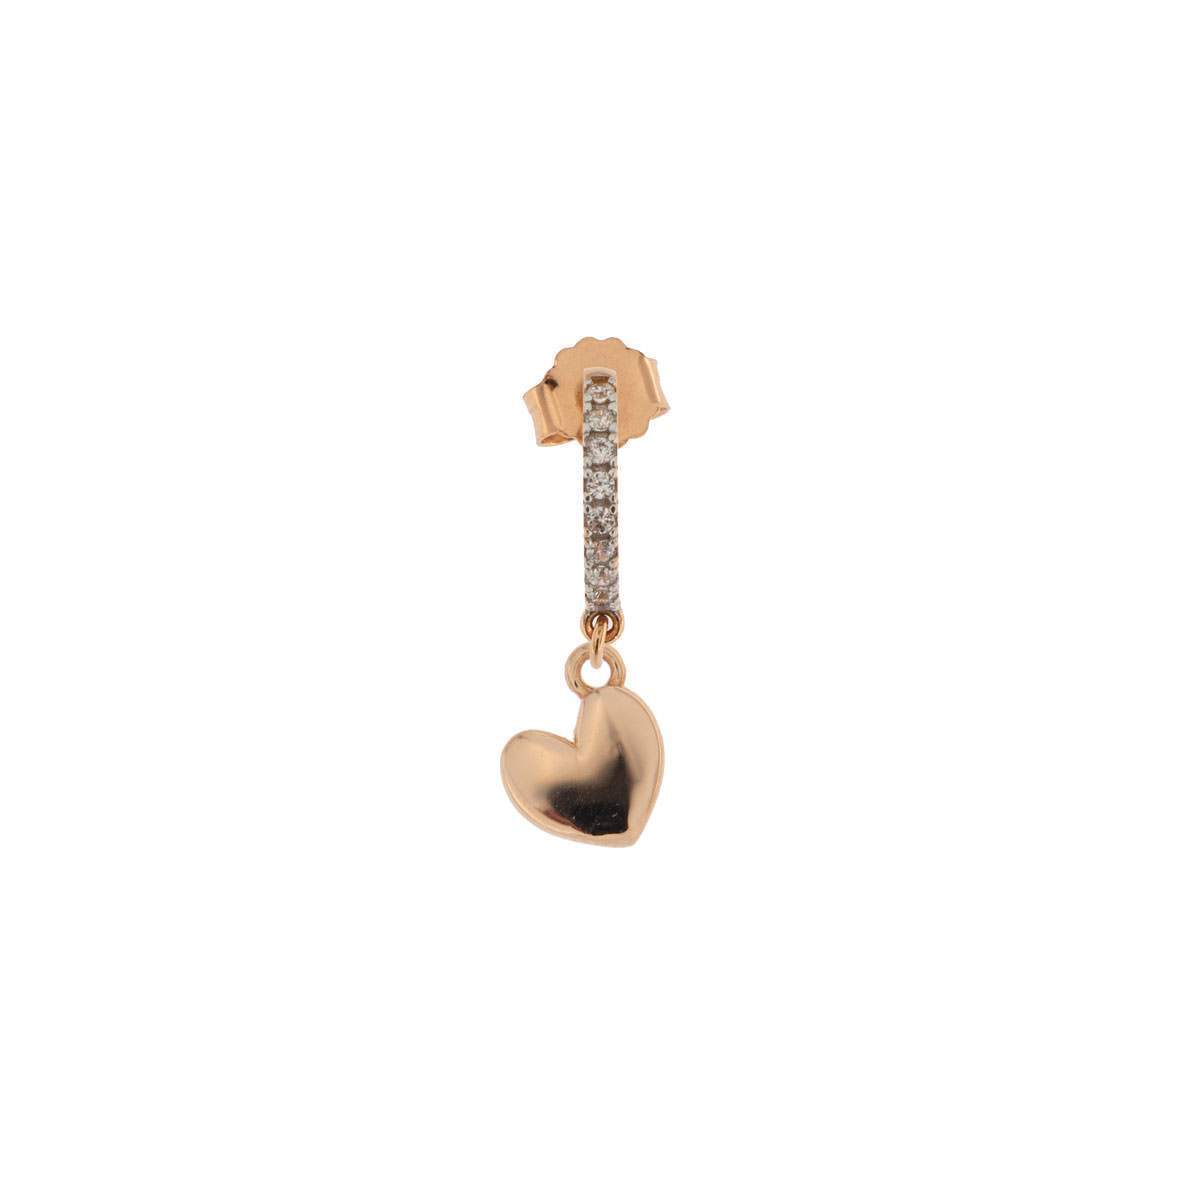 Rue Des Mille mono orecchino in argento 925 placcato in oro rosa 18 kt con soggetto "cuore" e zirconi - Codice mono orecchino: ORZ-FA CUO